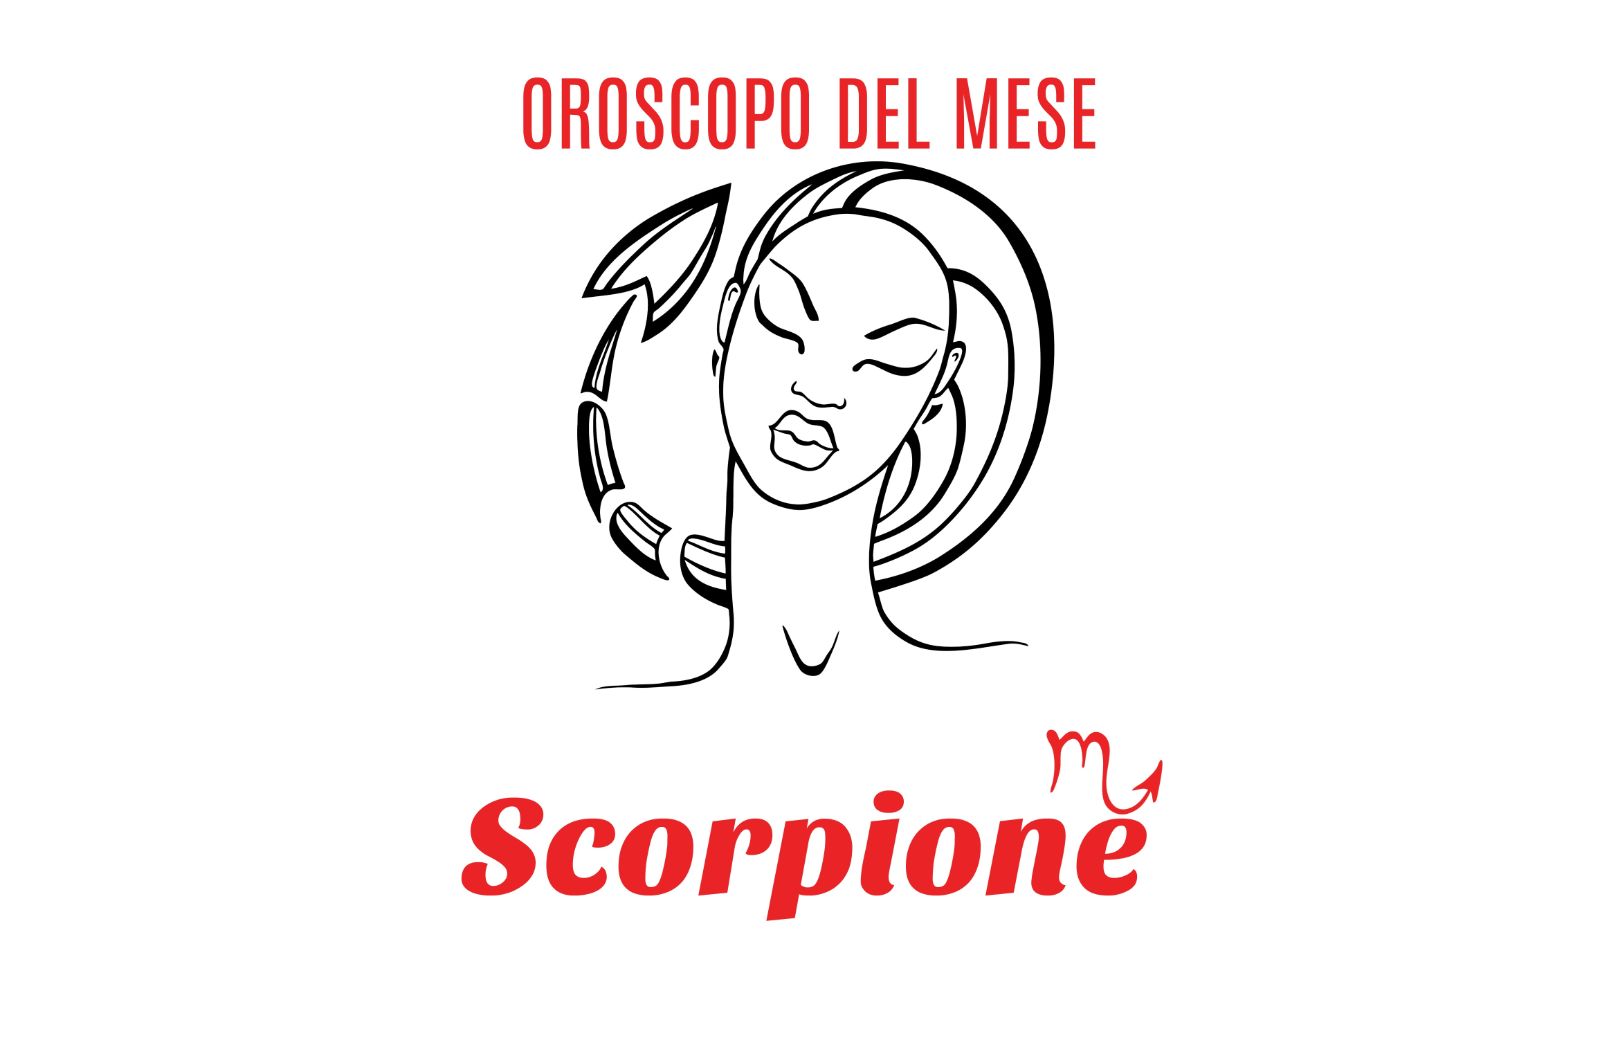 Oroscopo del mese: Scorpione - agosto 2019